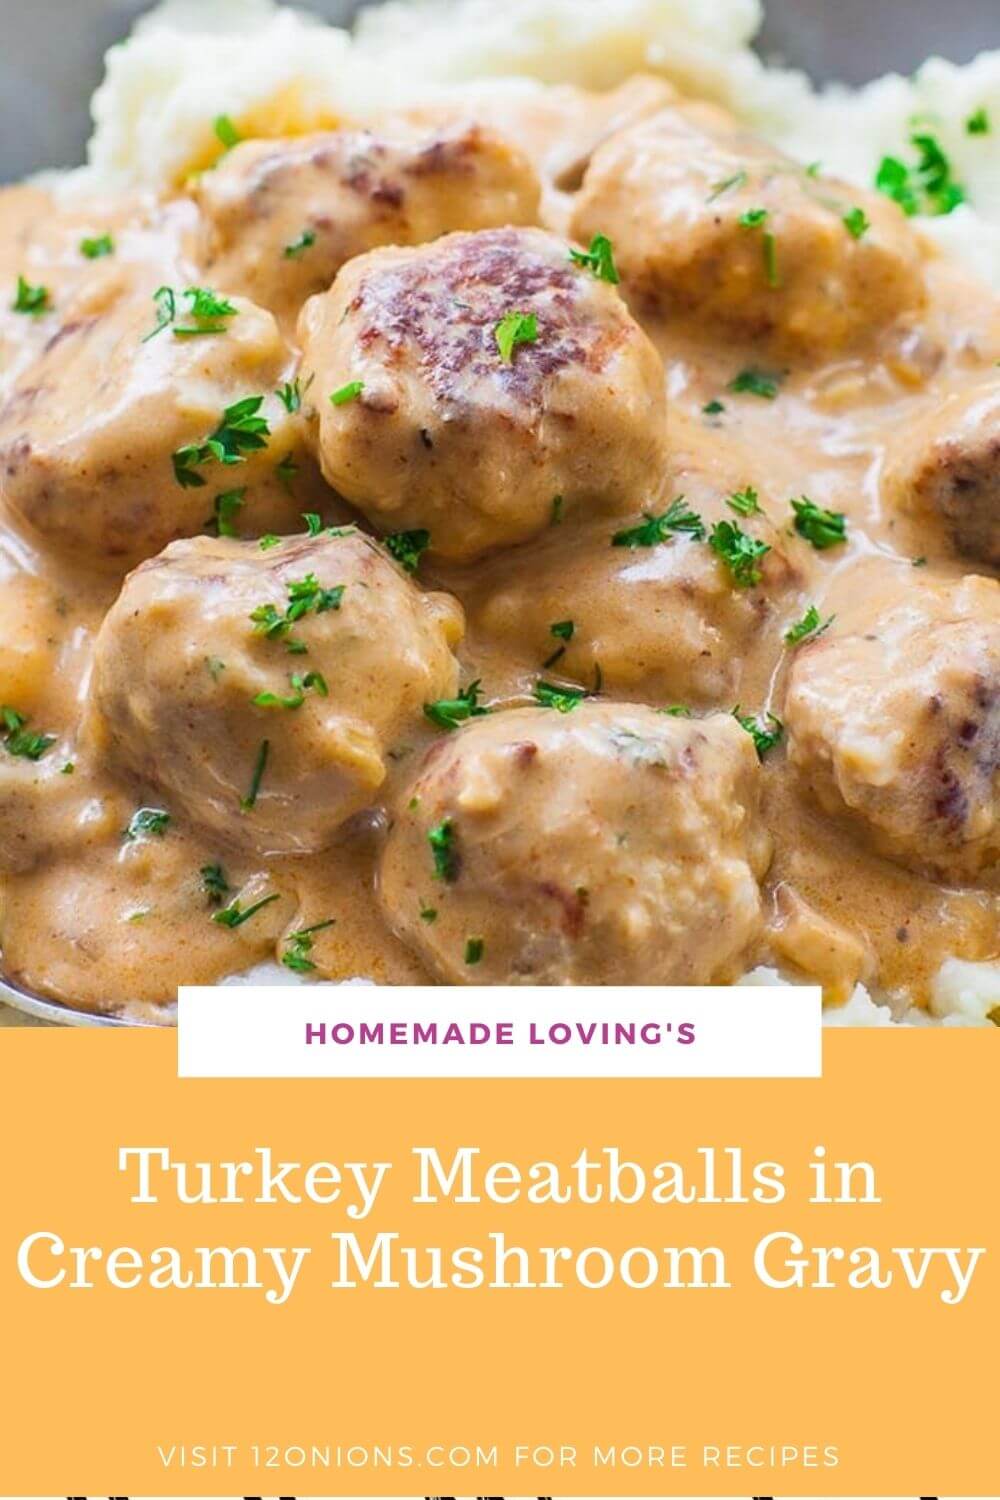 Turkey Meatballs in Creamy Mushroom Gravy